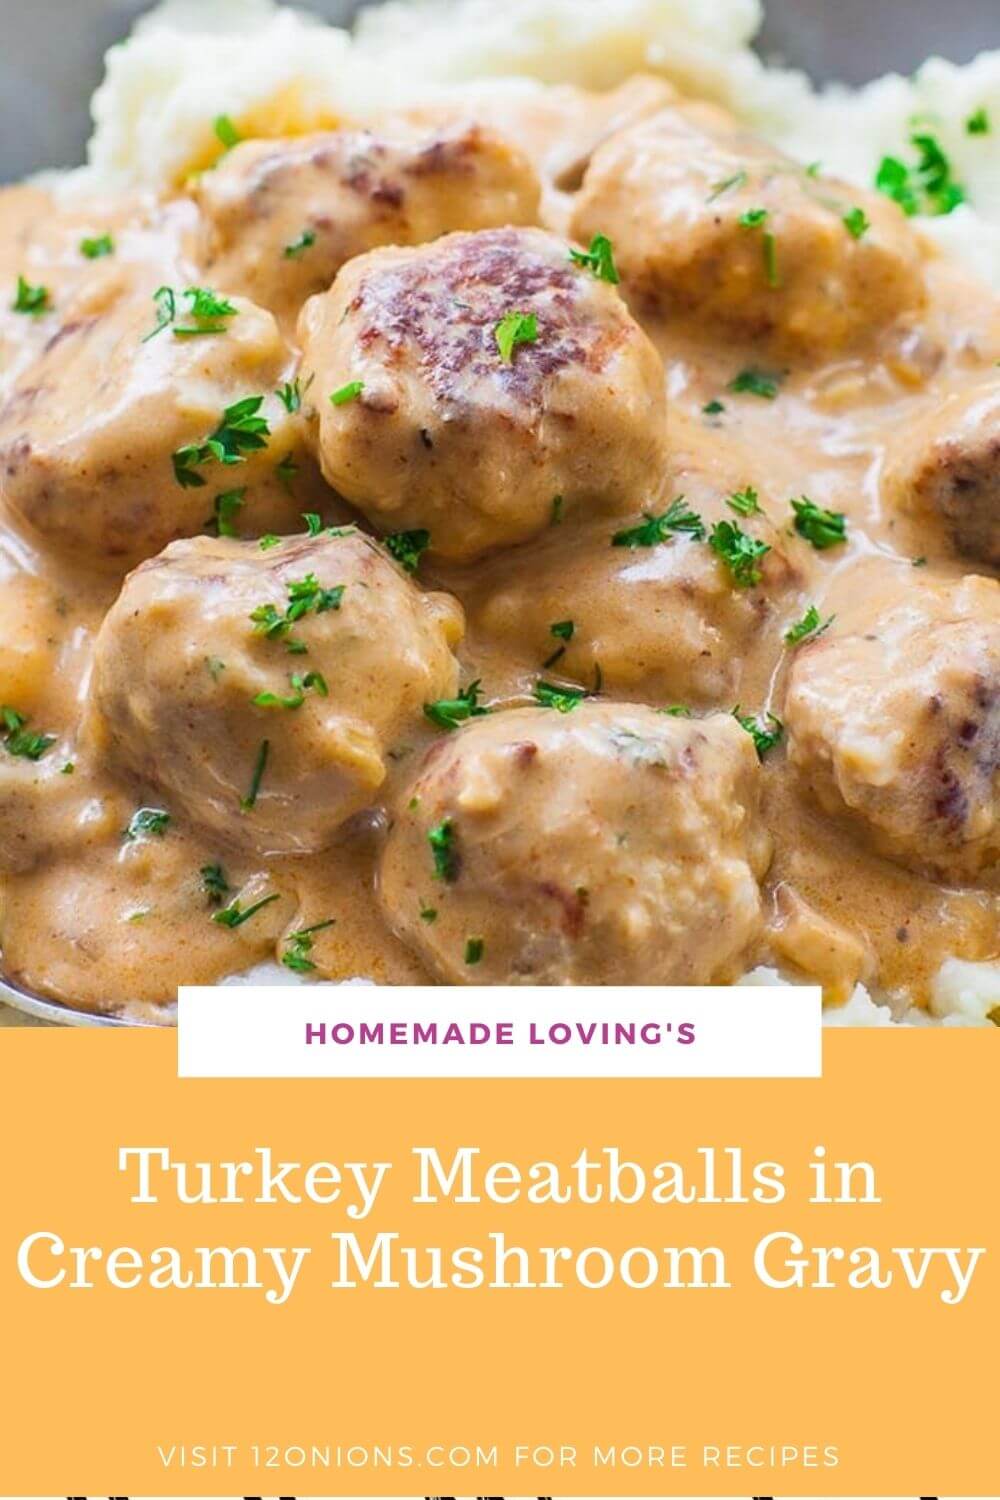 Turkey Meatballs in Creamy Mushroom Gravy